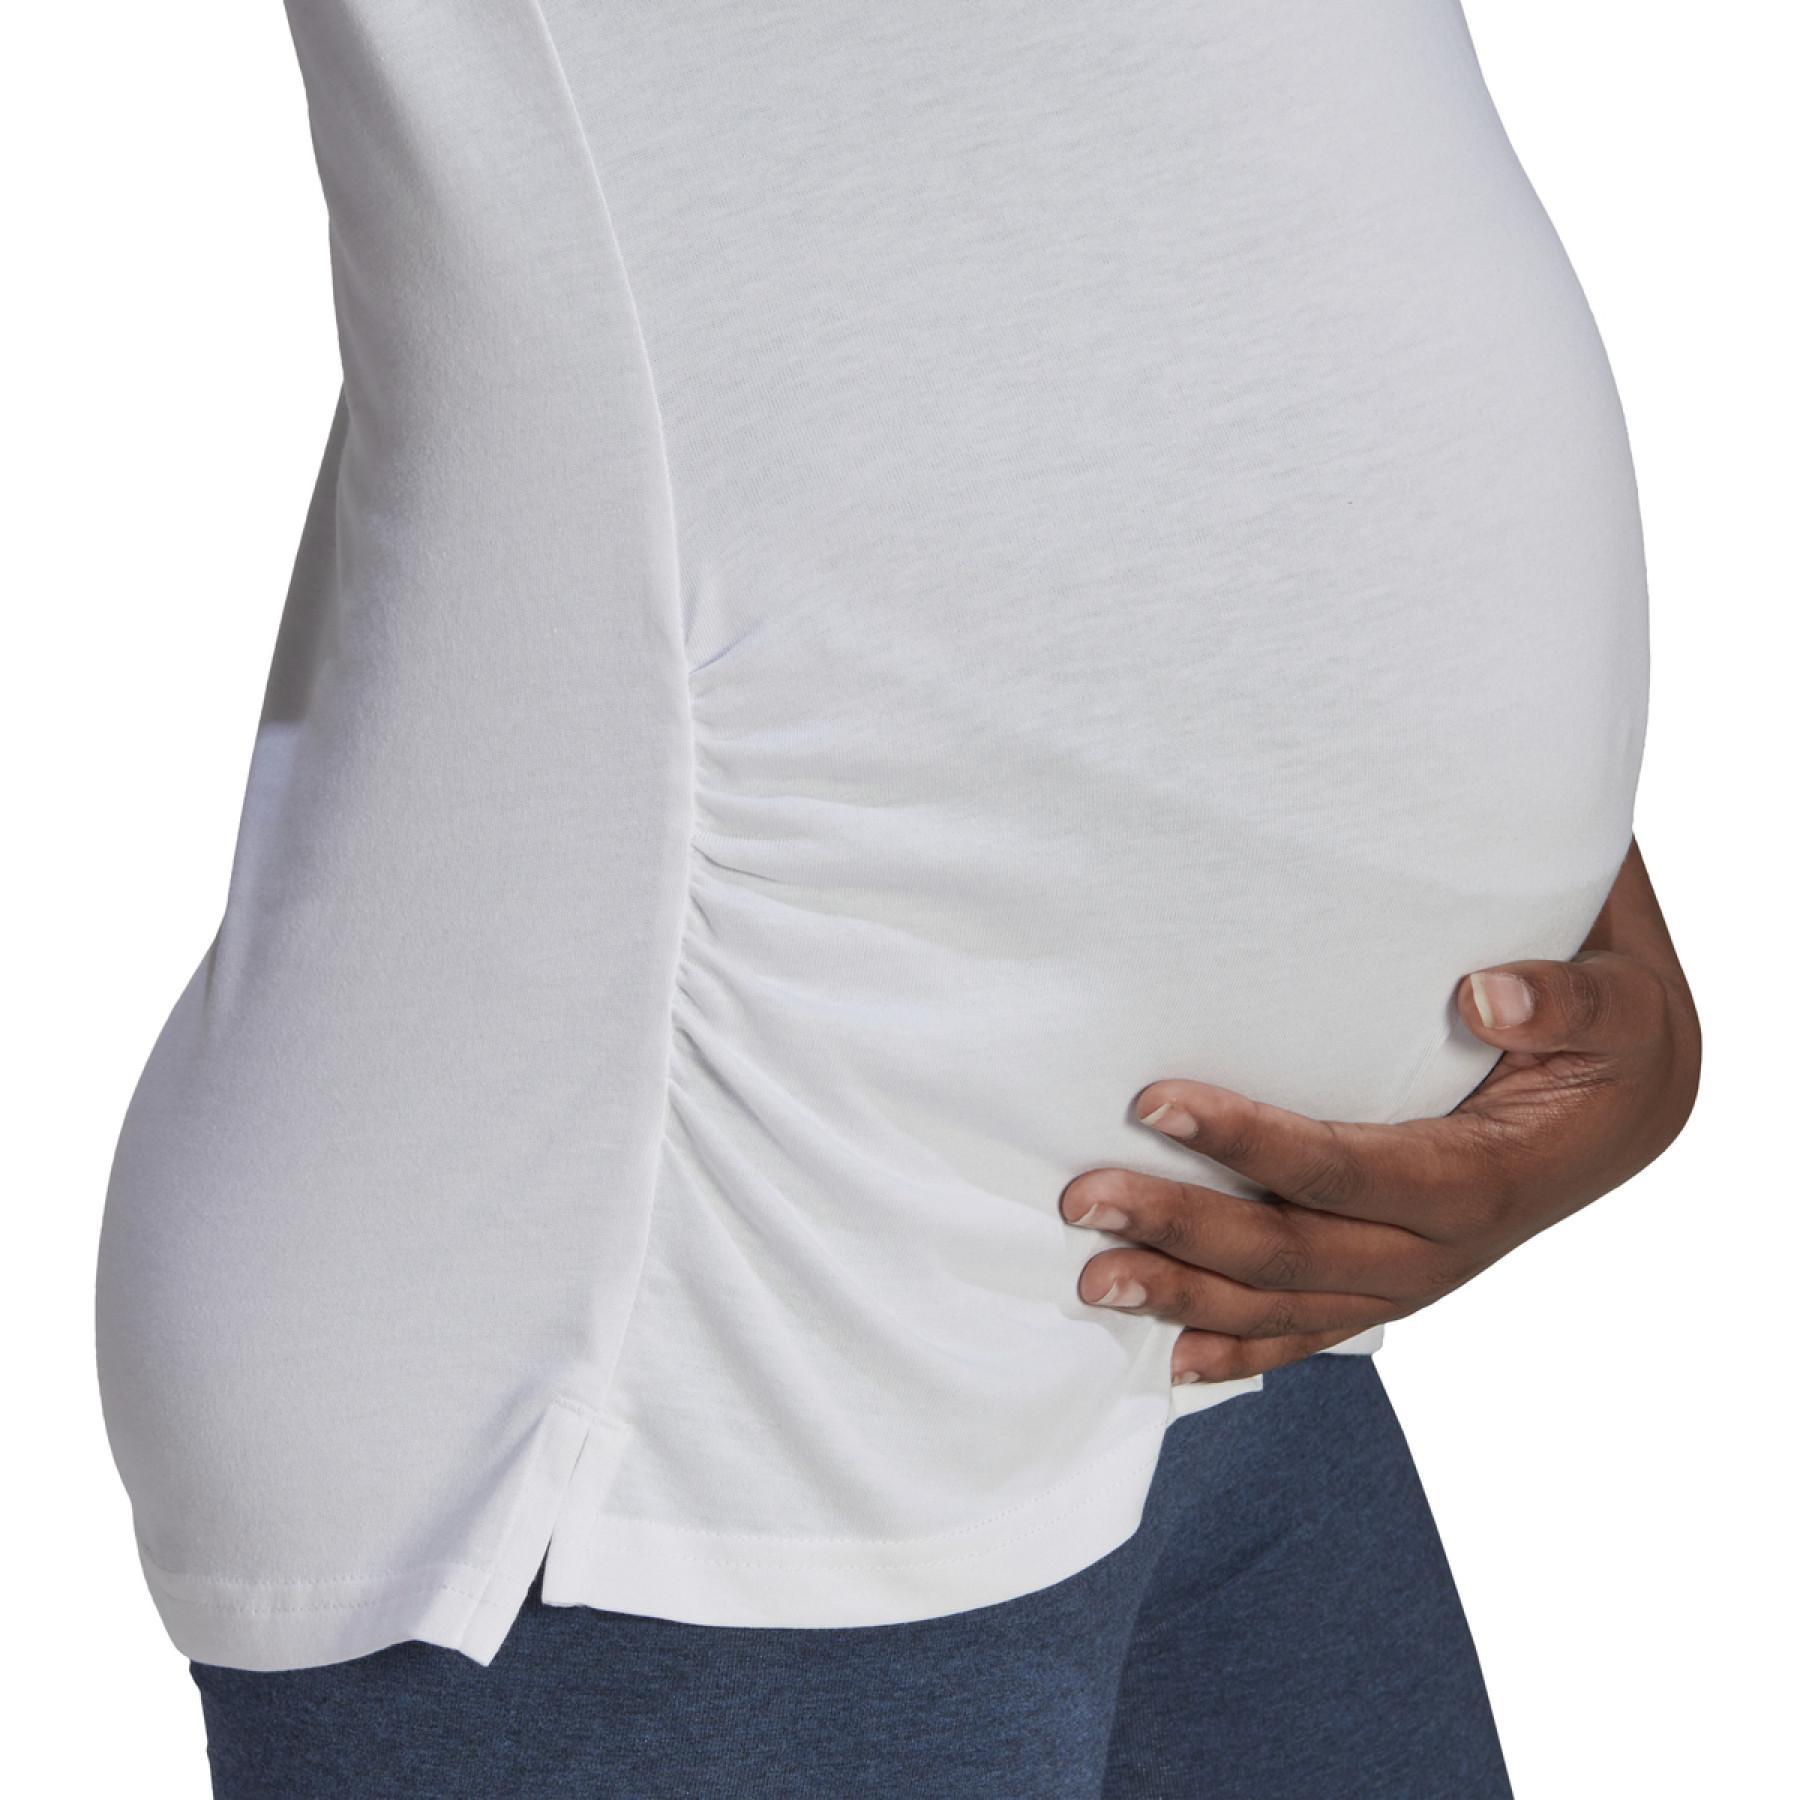 Camiseta feminina adidas Essentials Cotton Maternité